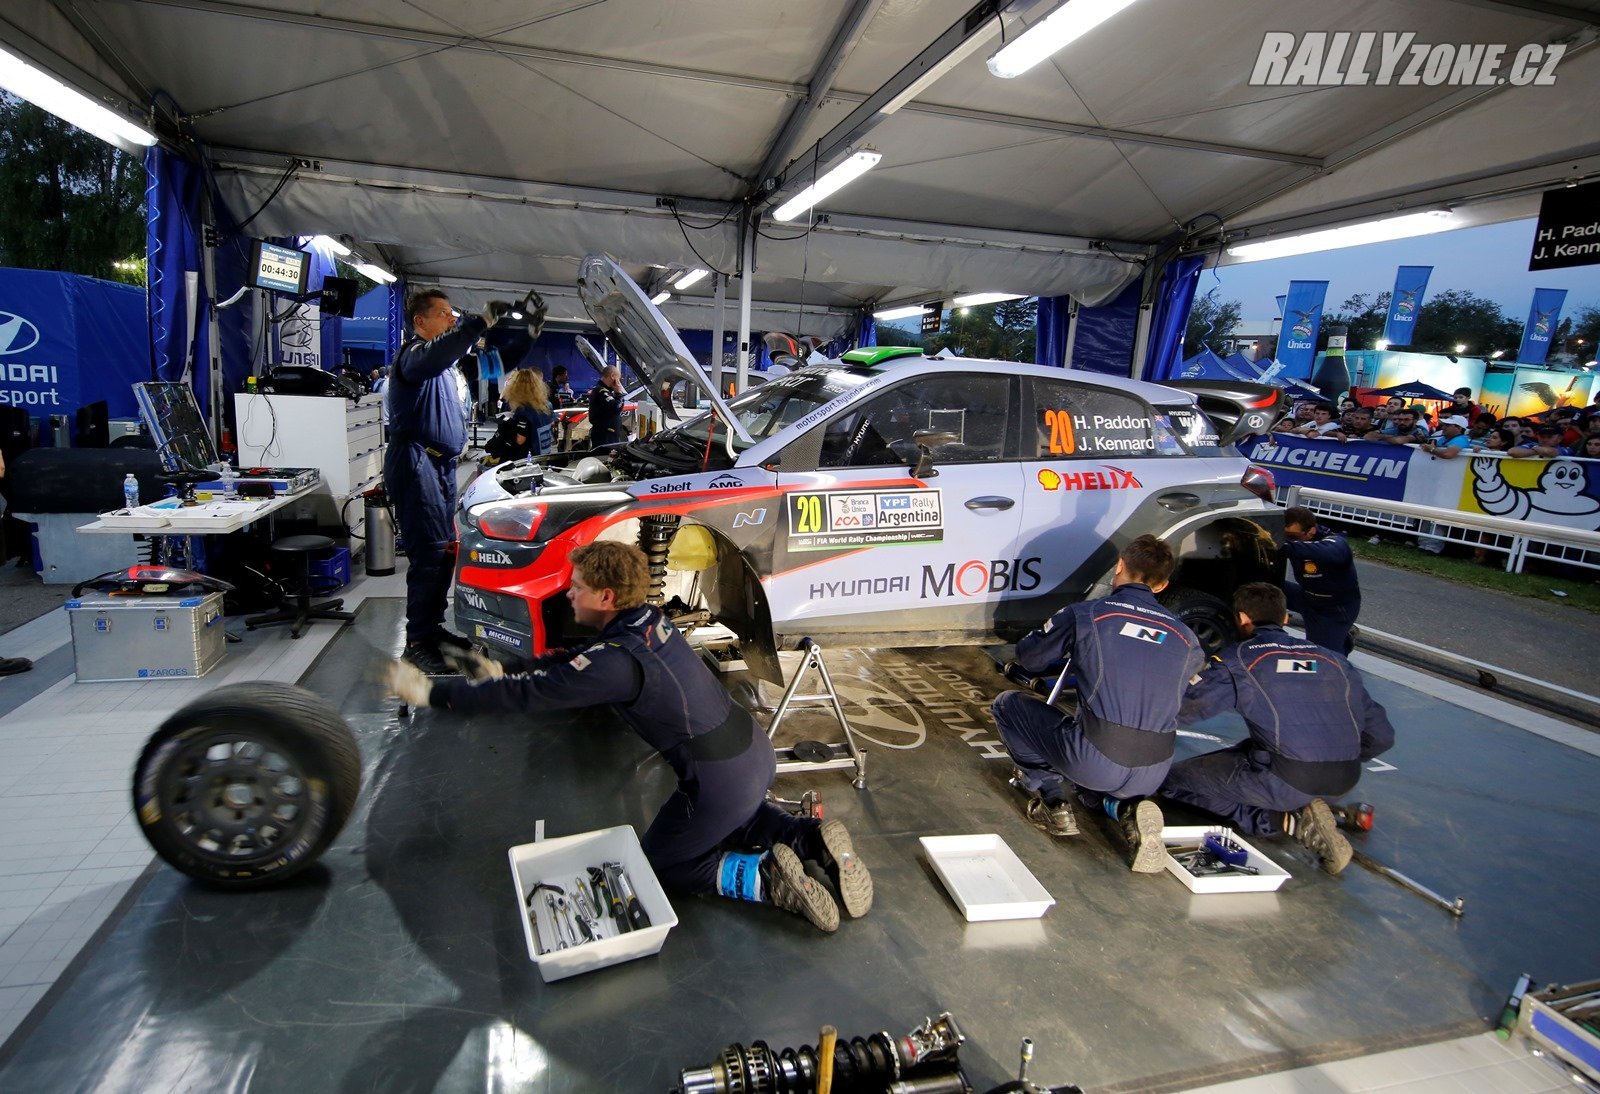 Vůz i20 WRC dvojice Paddon-Kennard v péči mechaniků